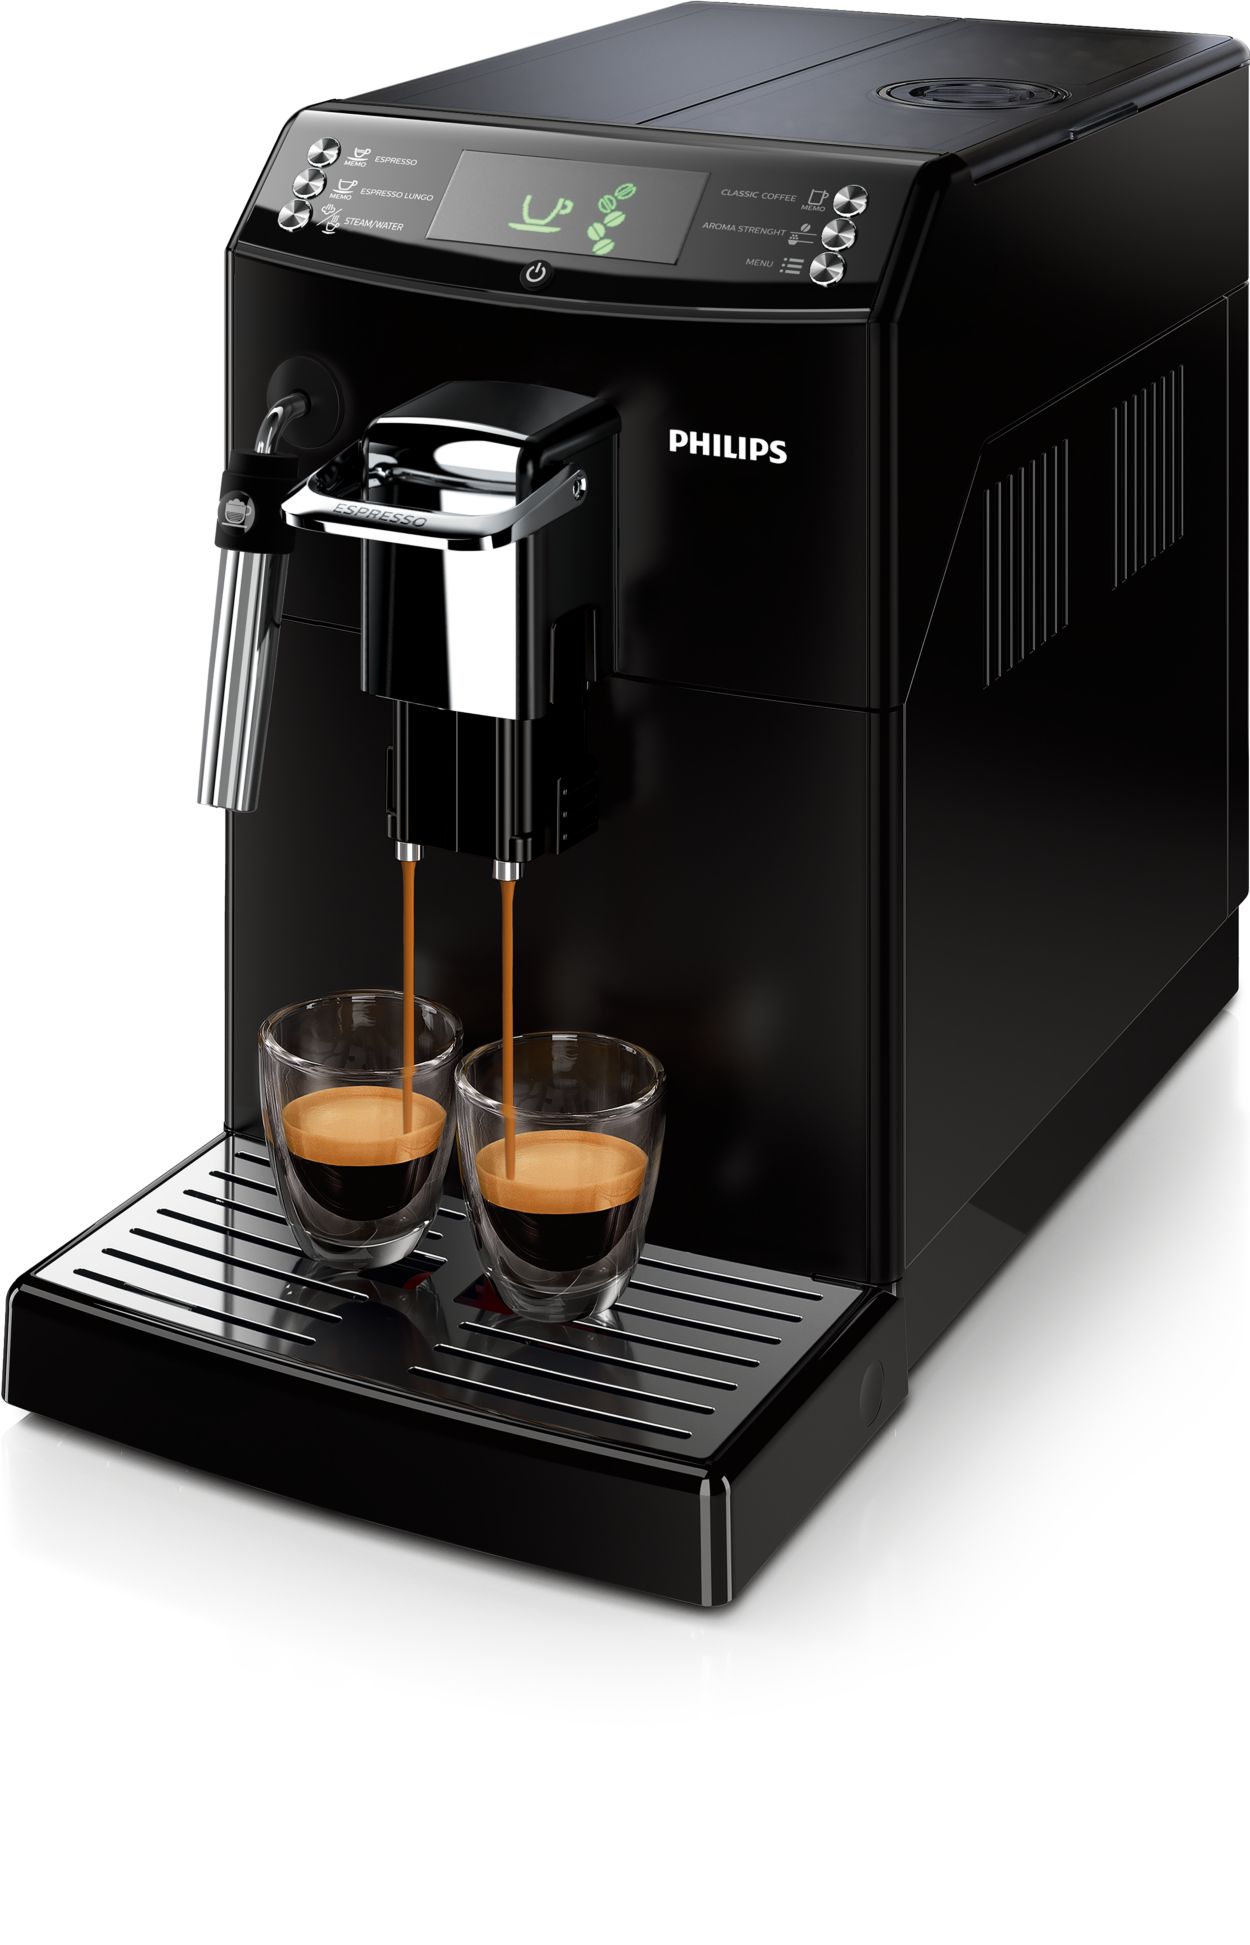 Lielisks espresso un filtrētas kafijas garša